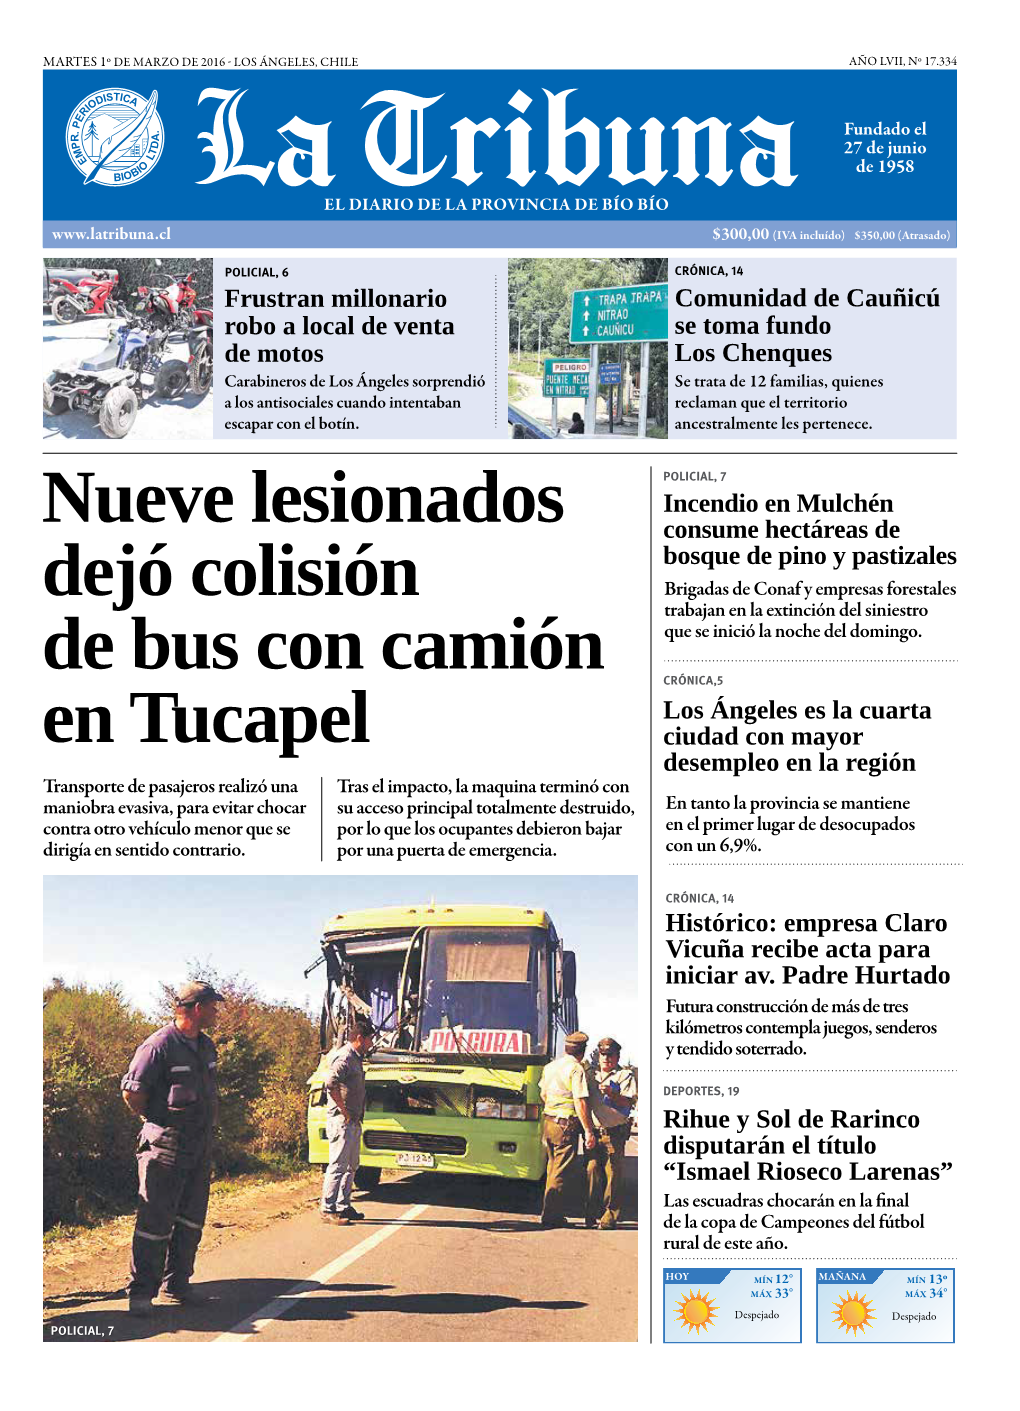 Nueve Lesionados Dejó Colisión De Bus Con Camión En Tucapel